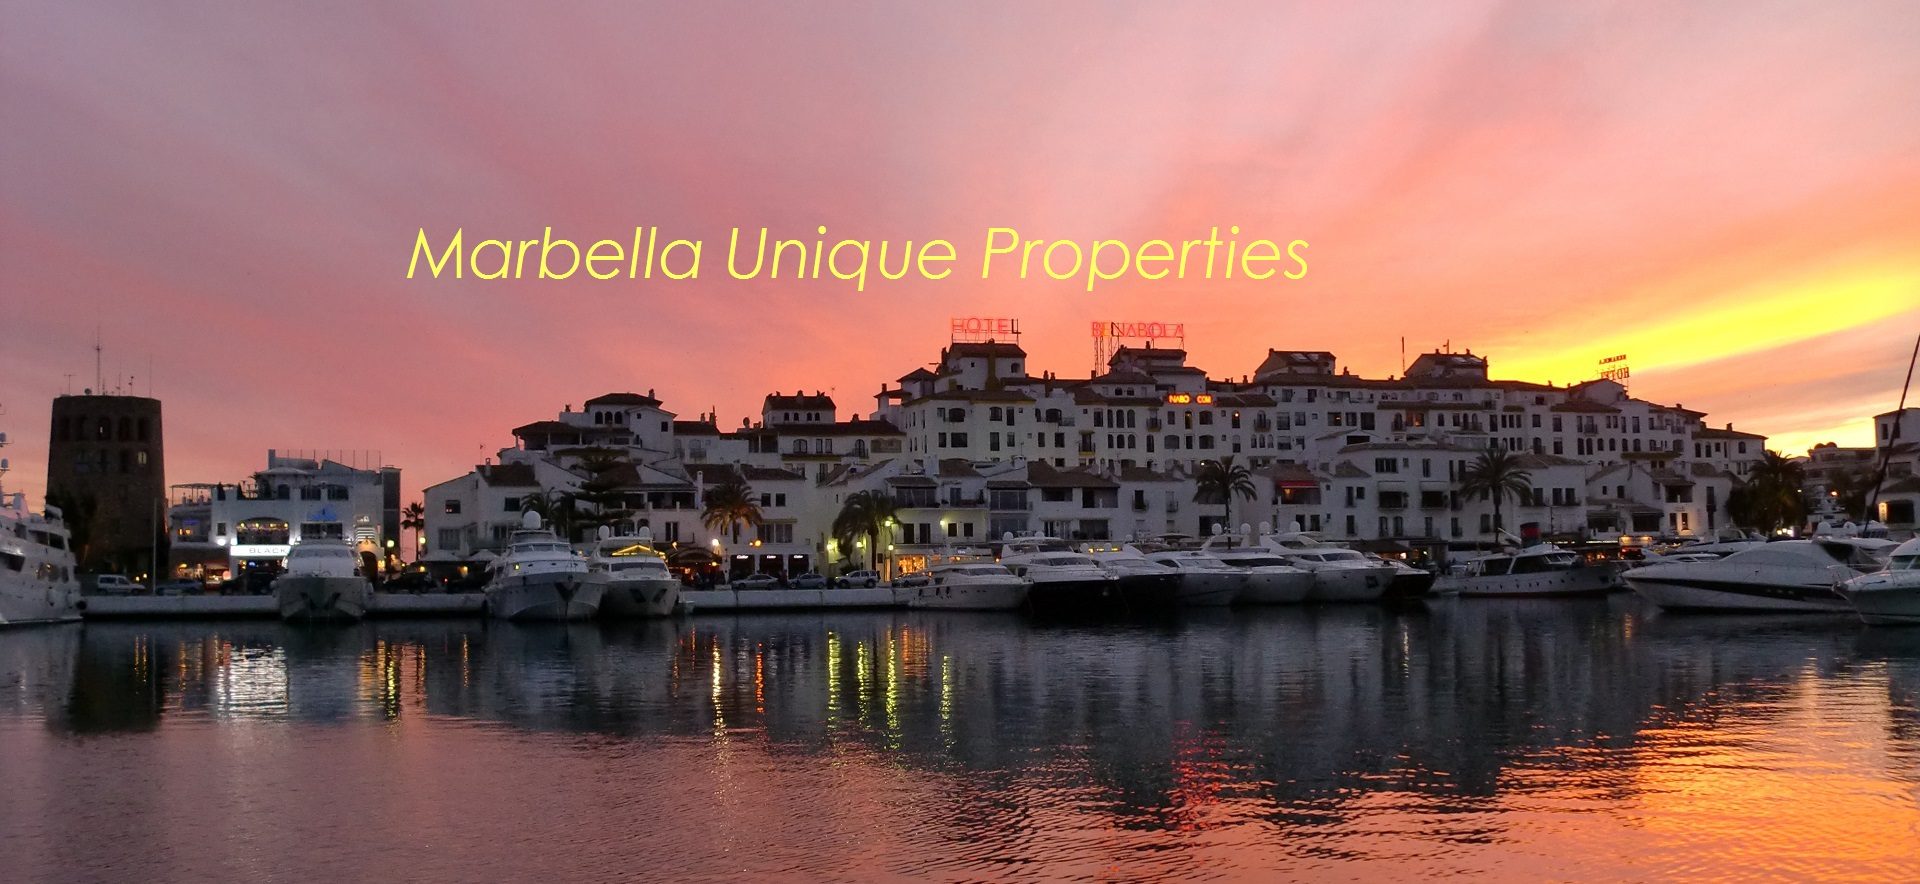 Puerto José Banús - Real Estate Marbella Unique Properties - Sales and Rentals (2)